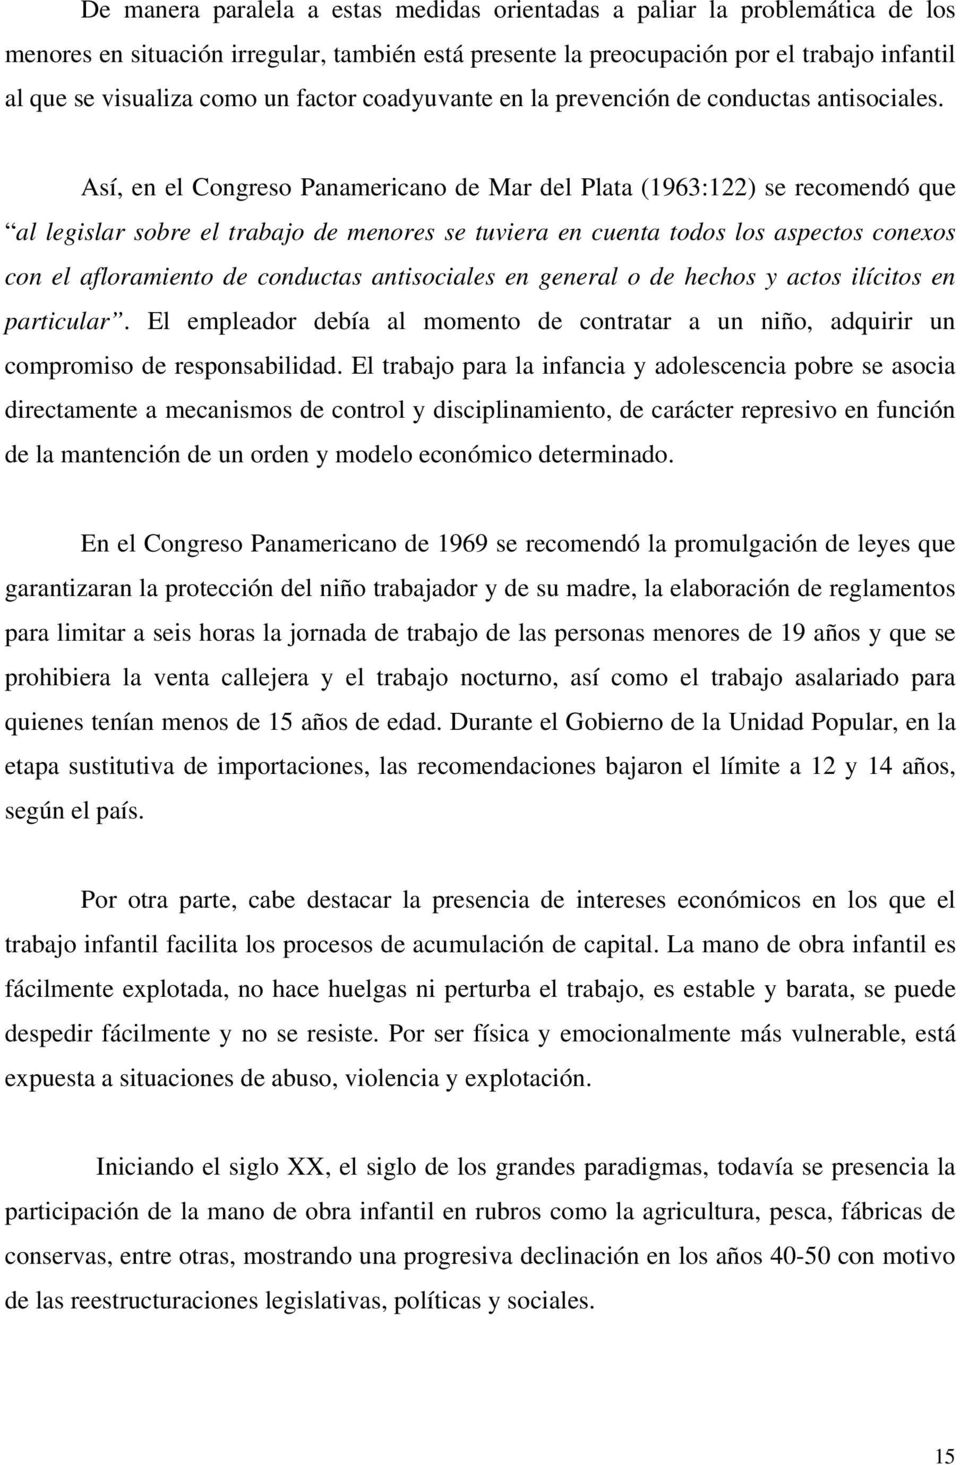 Así, en el Congreso Panamericano de Mar del Plata (1963:122) se recomendó que al legislar sobre el trabajo de menores se tuviera en cuenta todos los aspectos conexos con el afloramiento de conductas